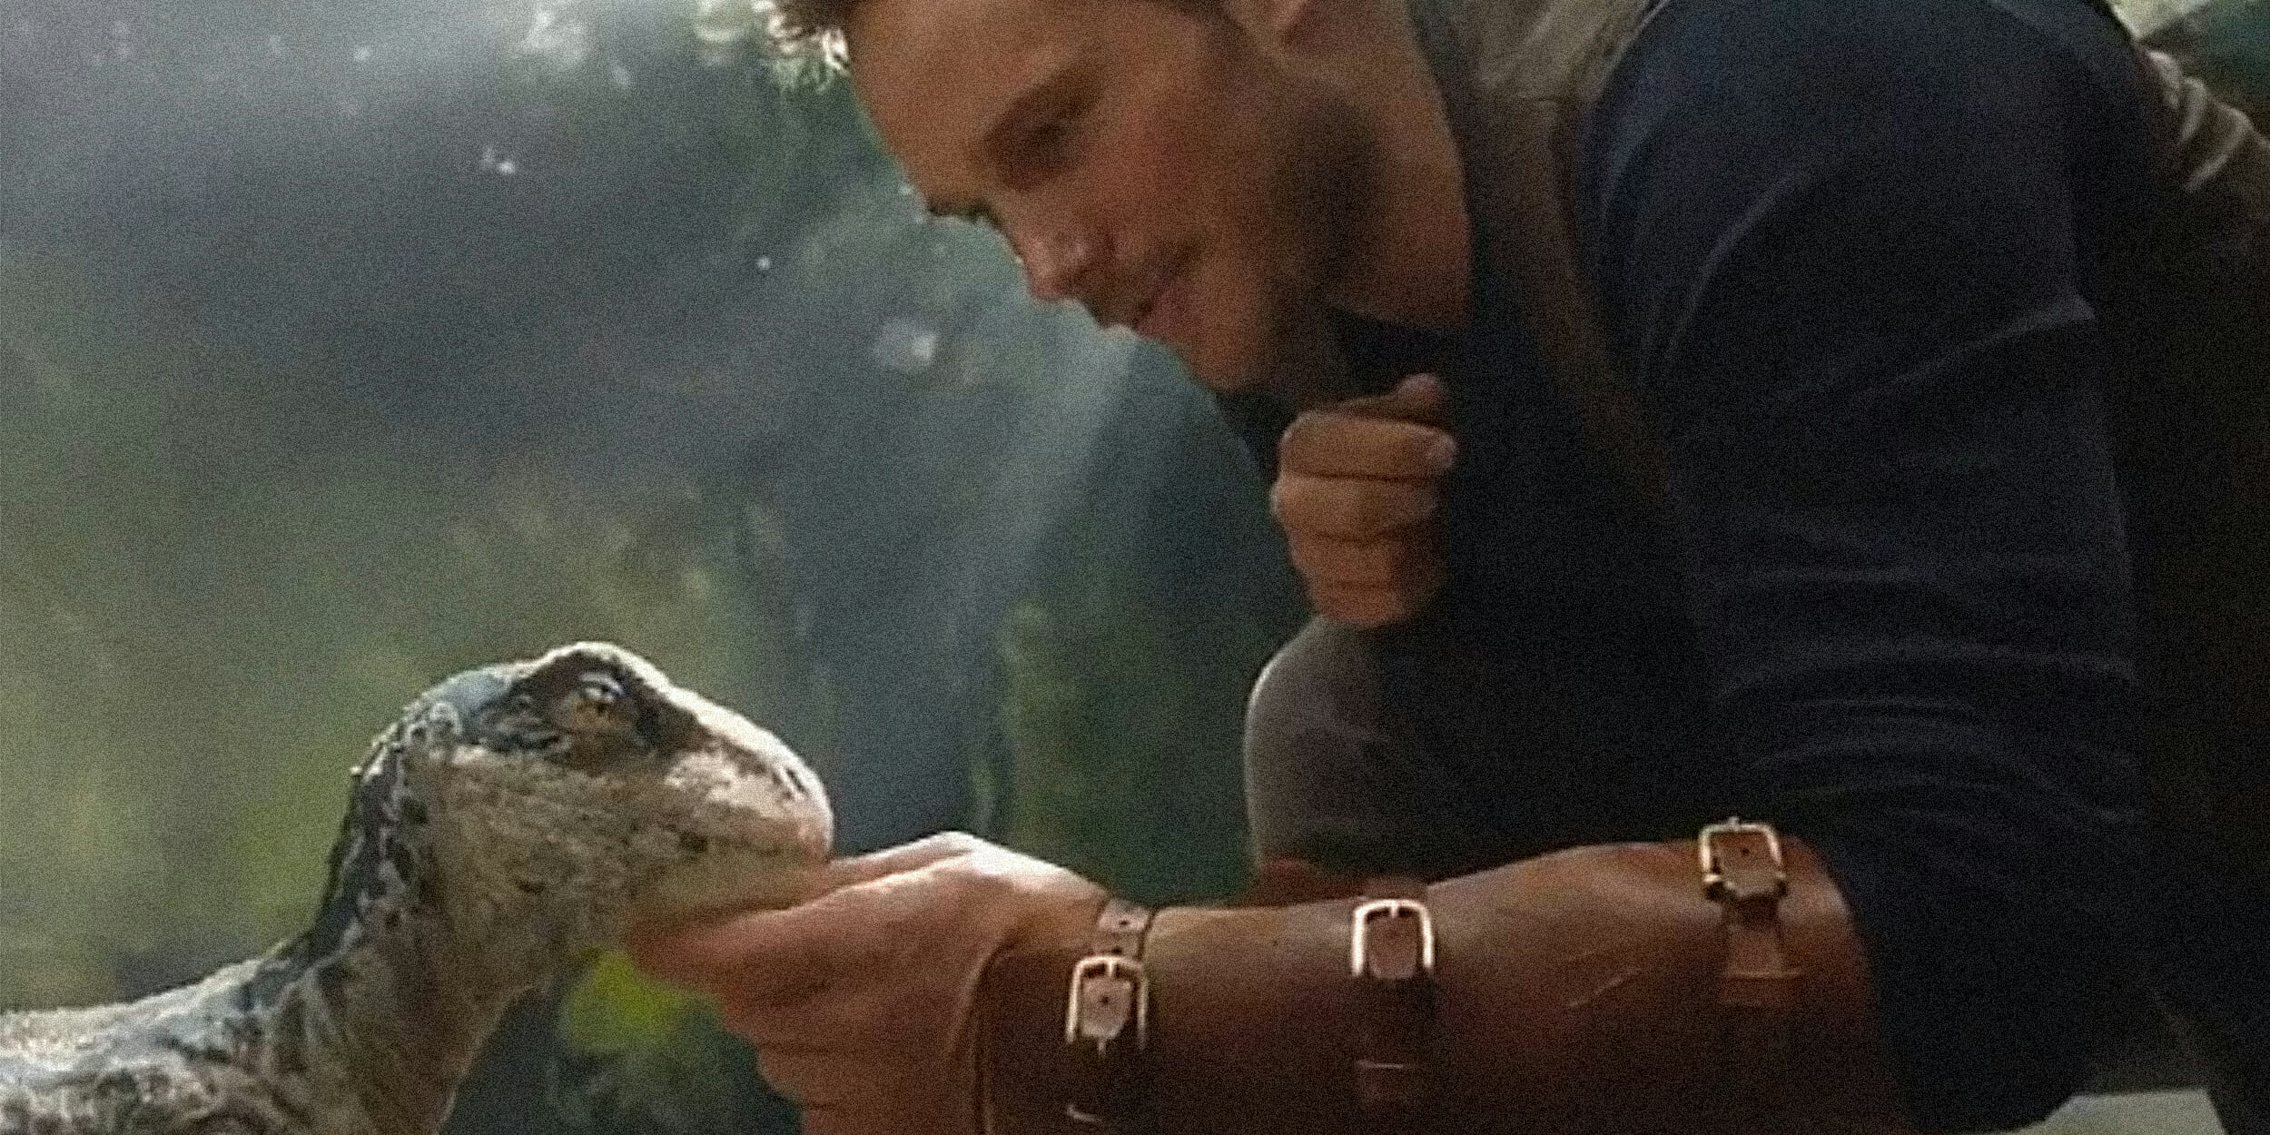 Chris Pratt petting baby velociraptor